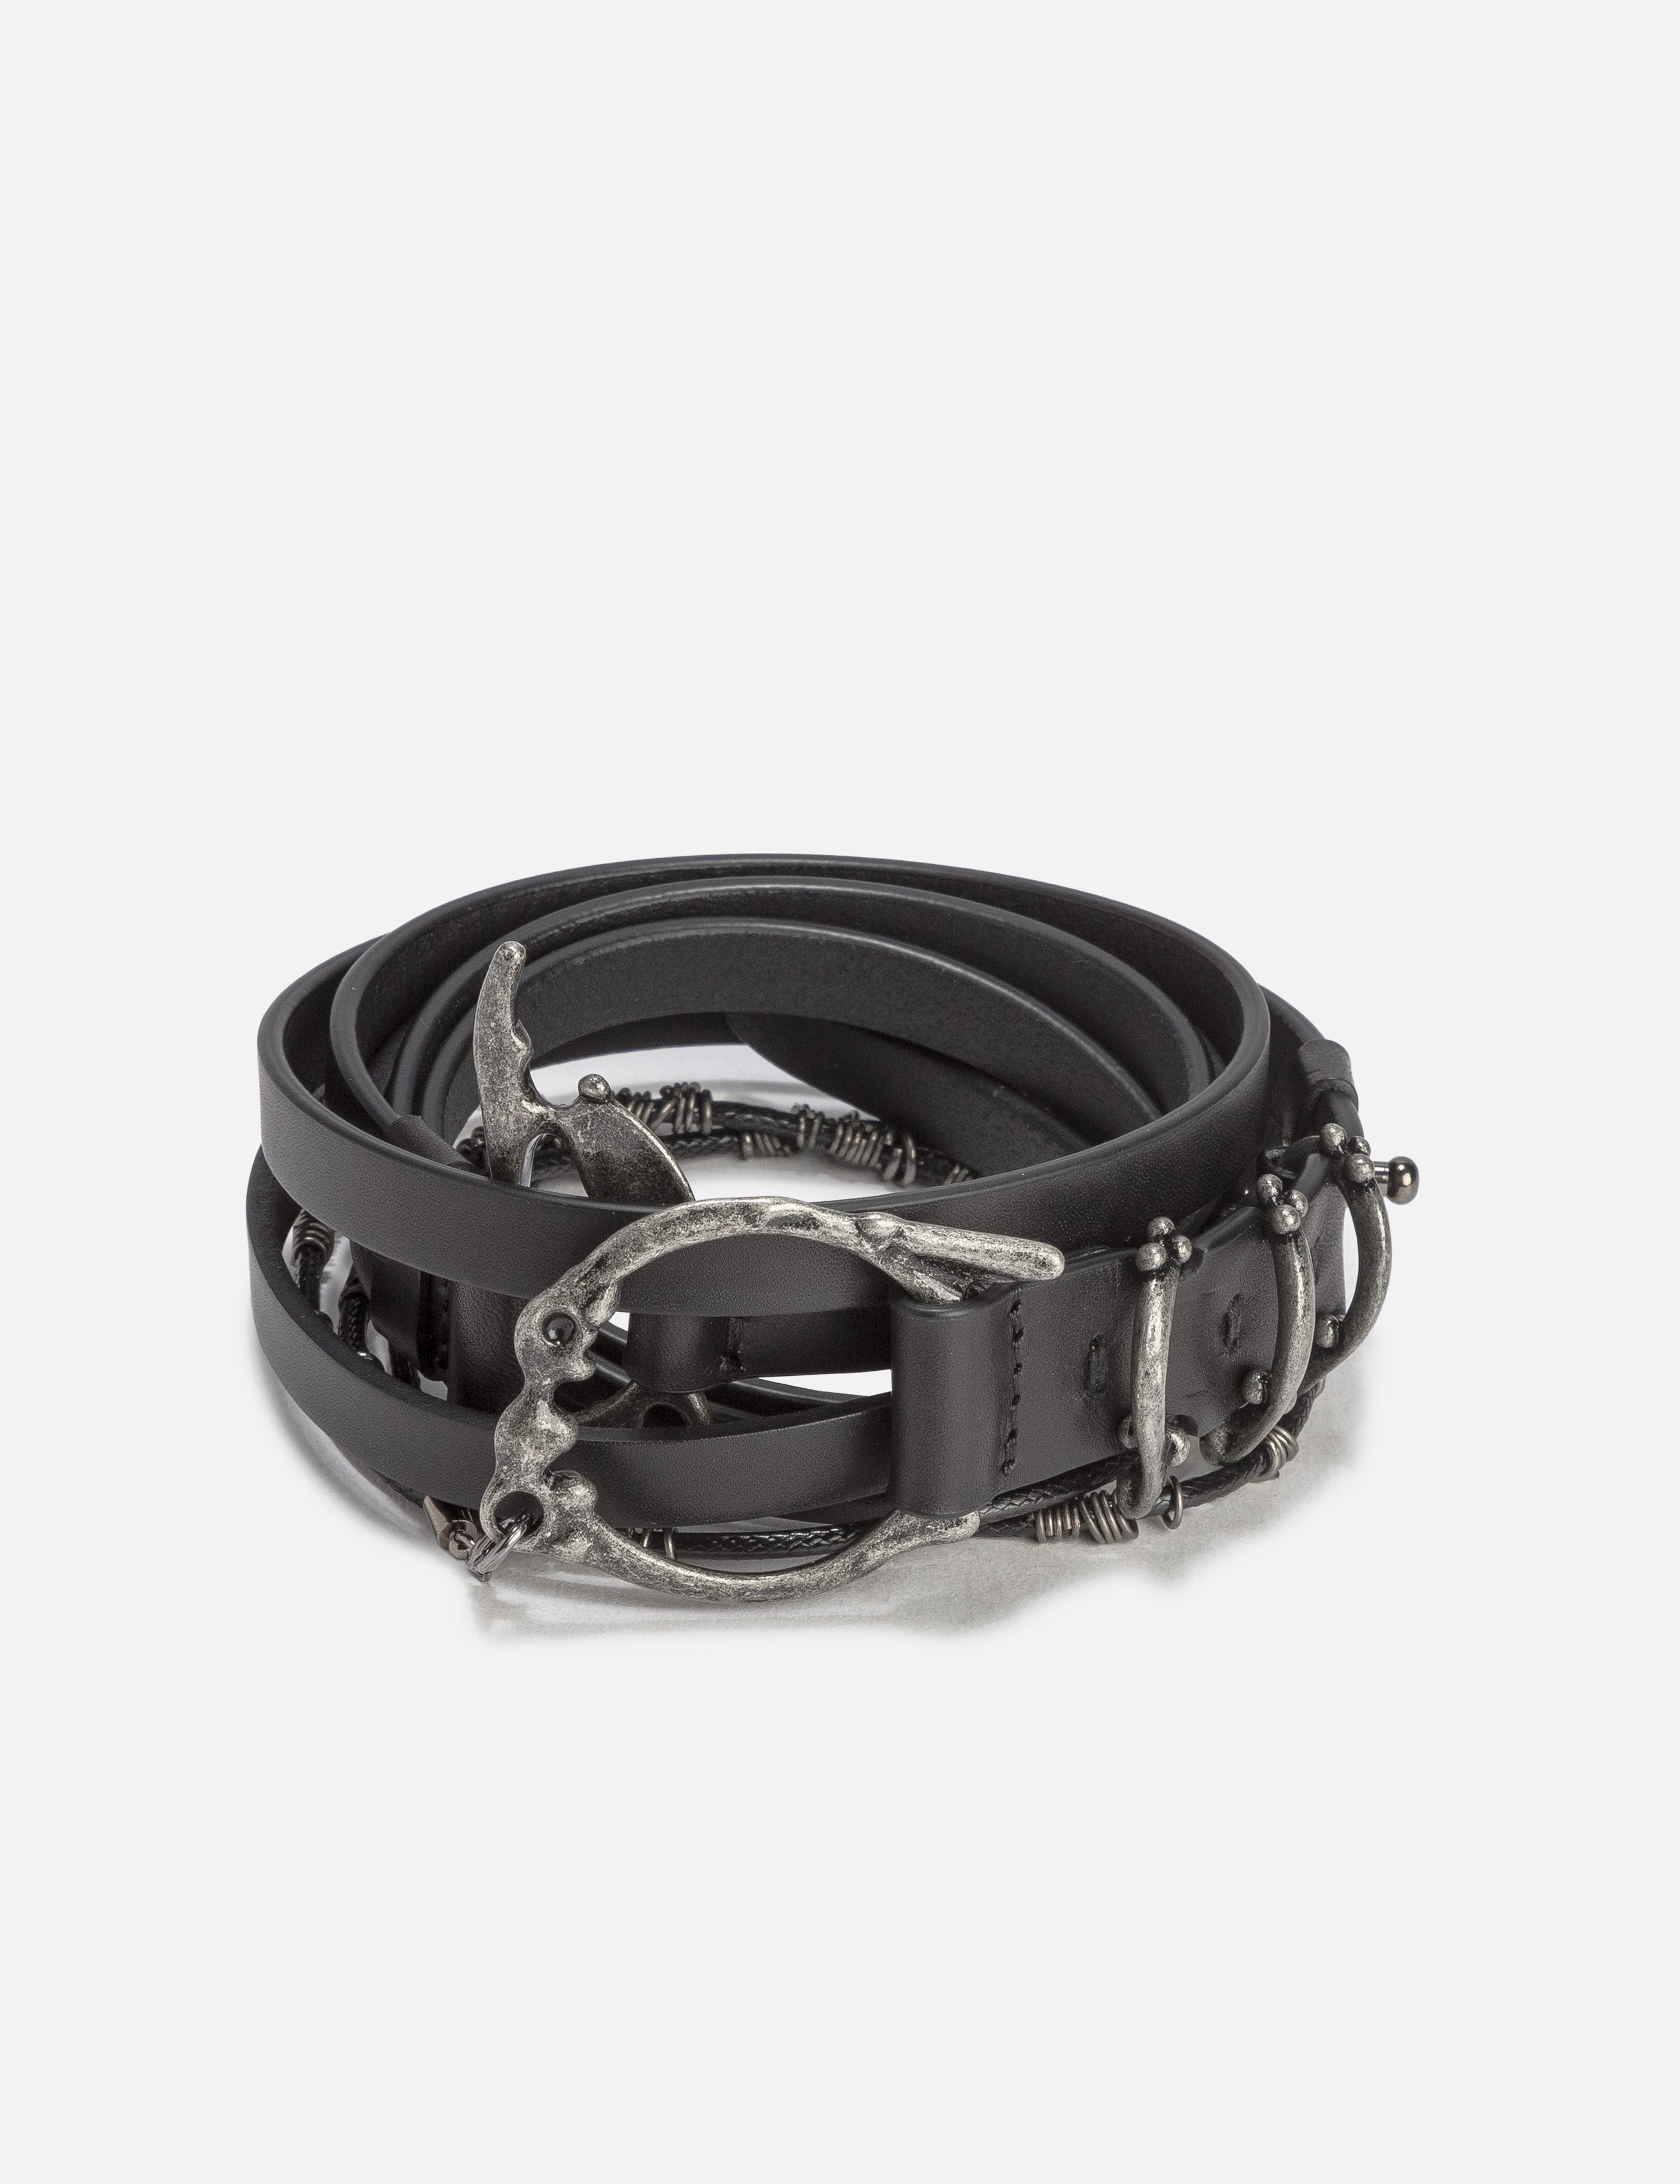 メンズファッション 財布、帽子、ファッション小物 Human Made - Bulldog Leather Belt | HBX - Globally Curated Fashion 